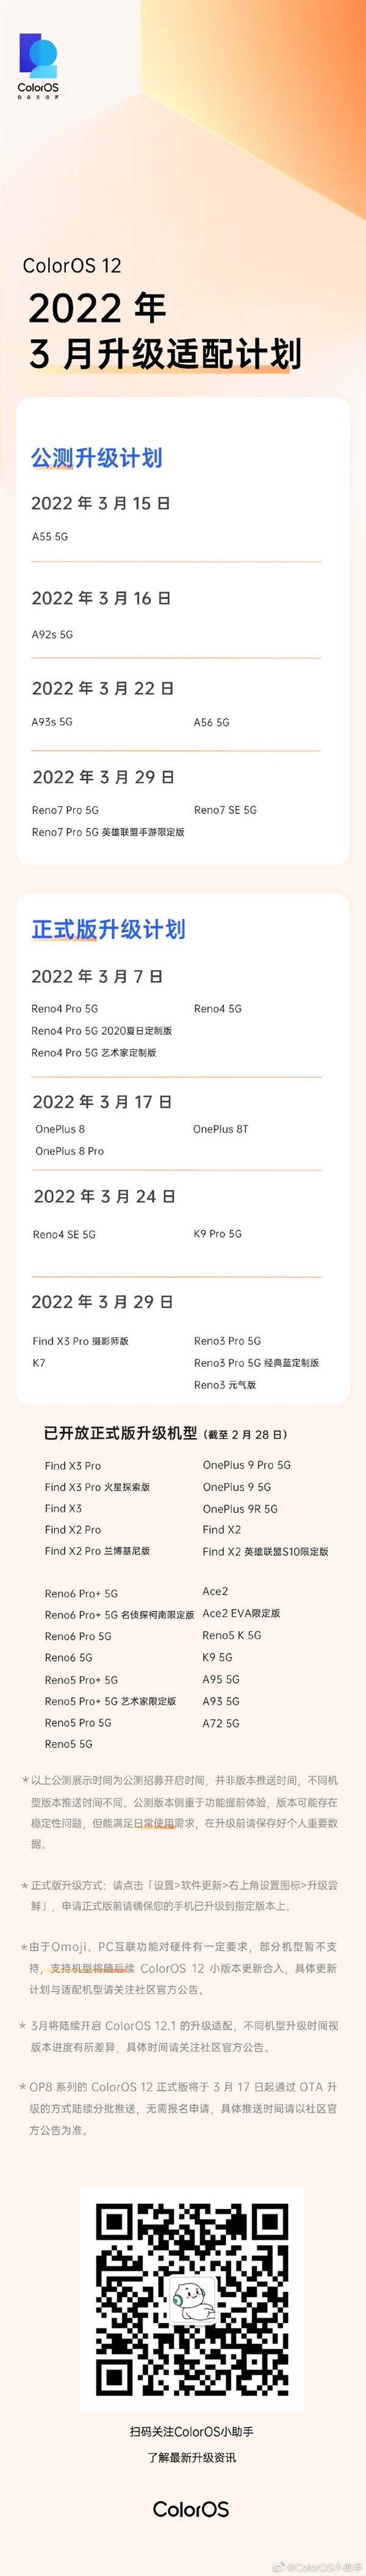 2022年3月ColorOS12升级适配计划公布，包括公测和正式两个版本